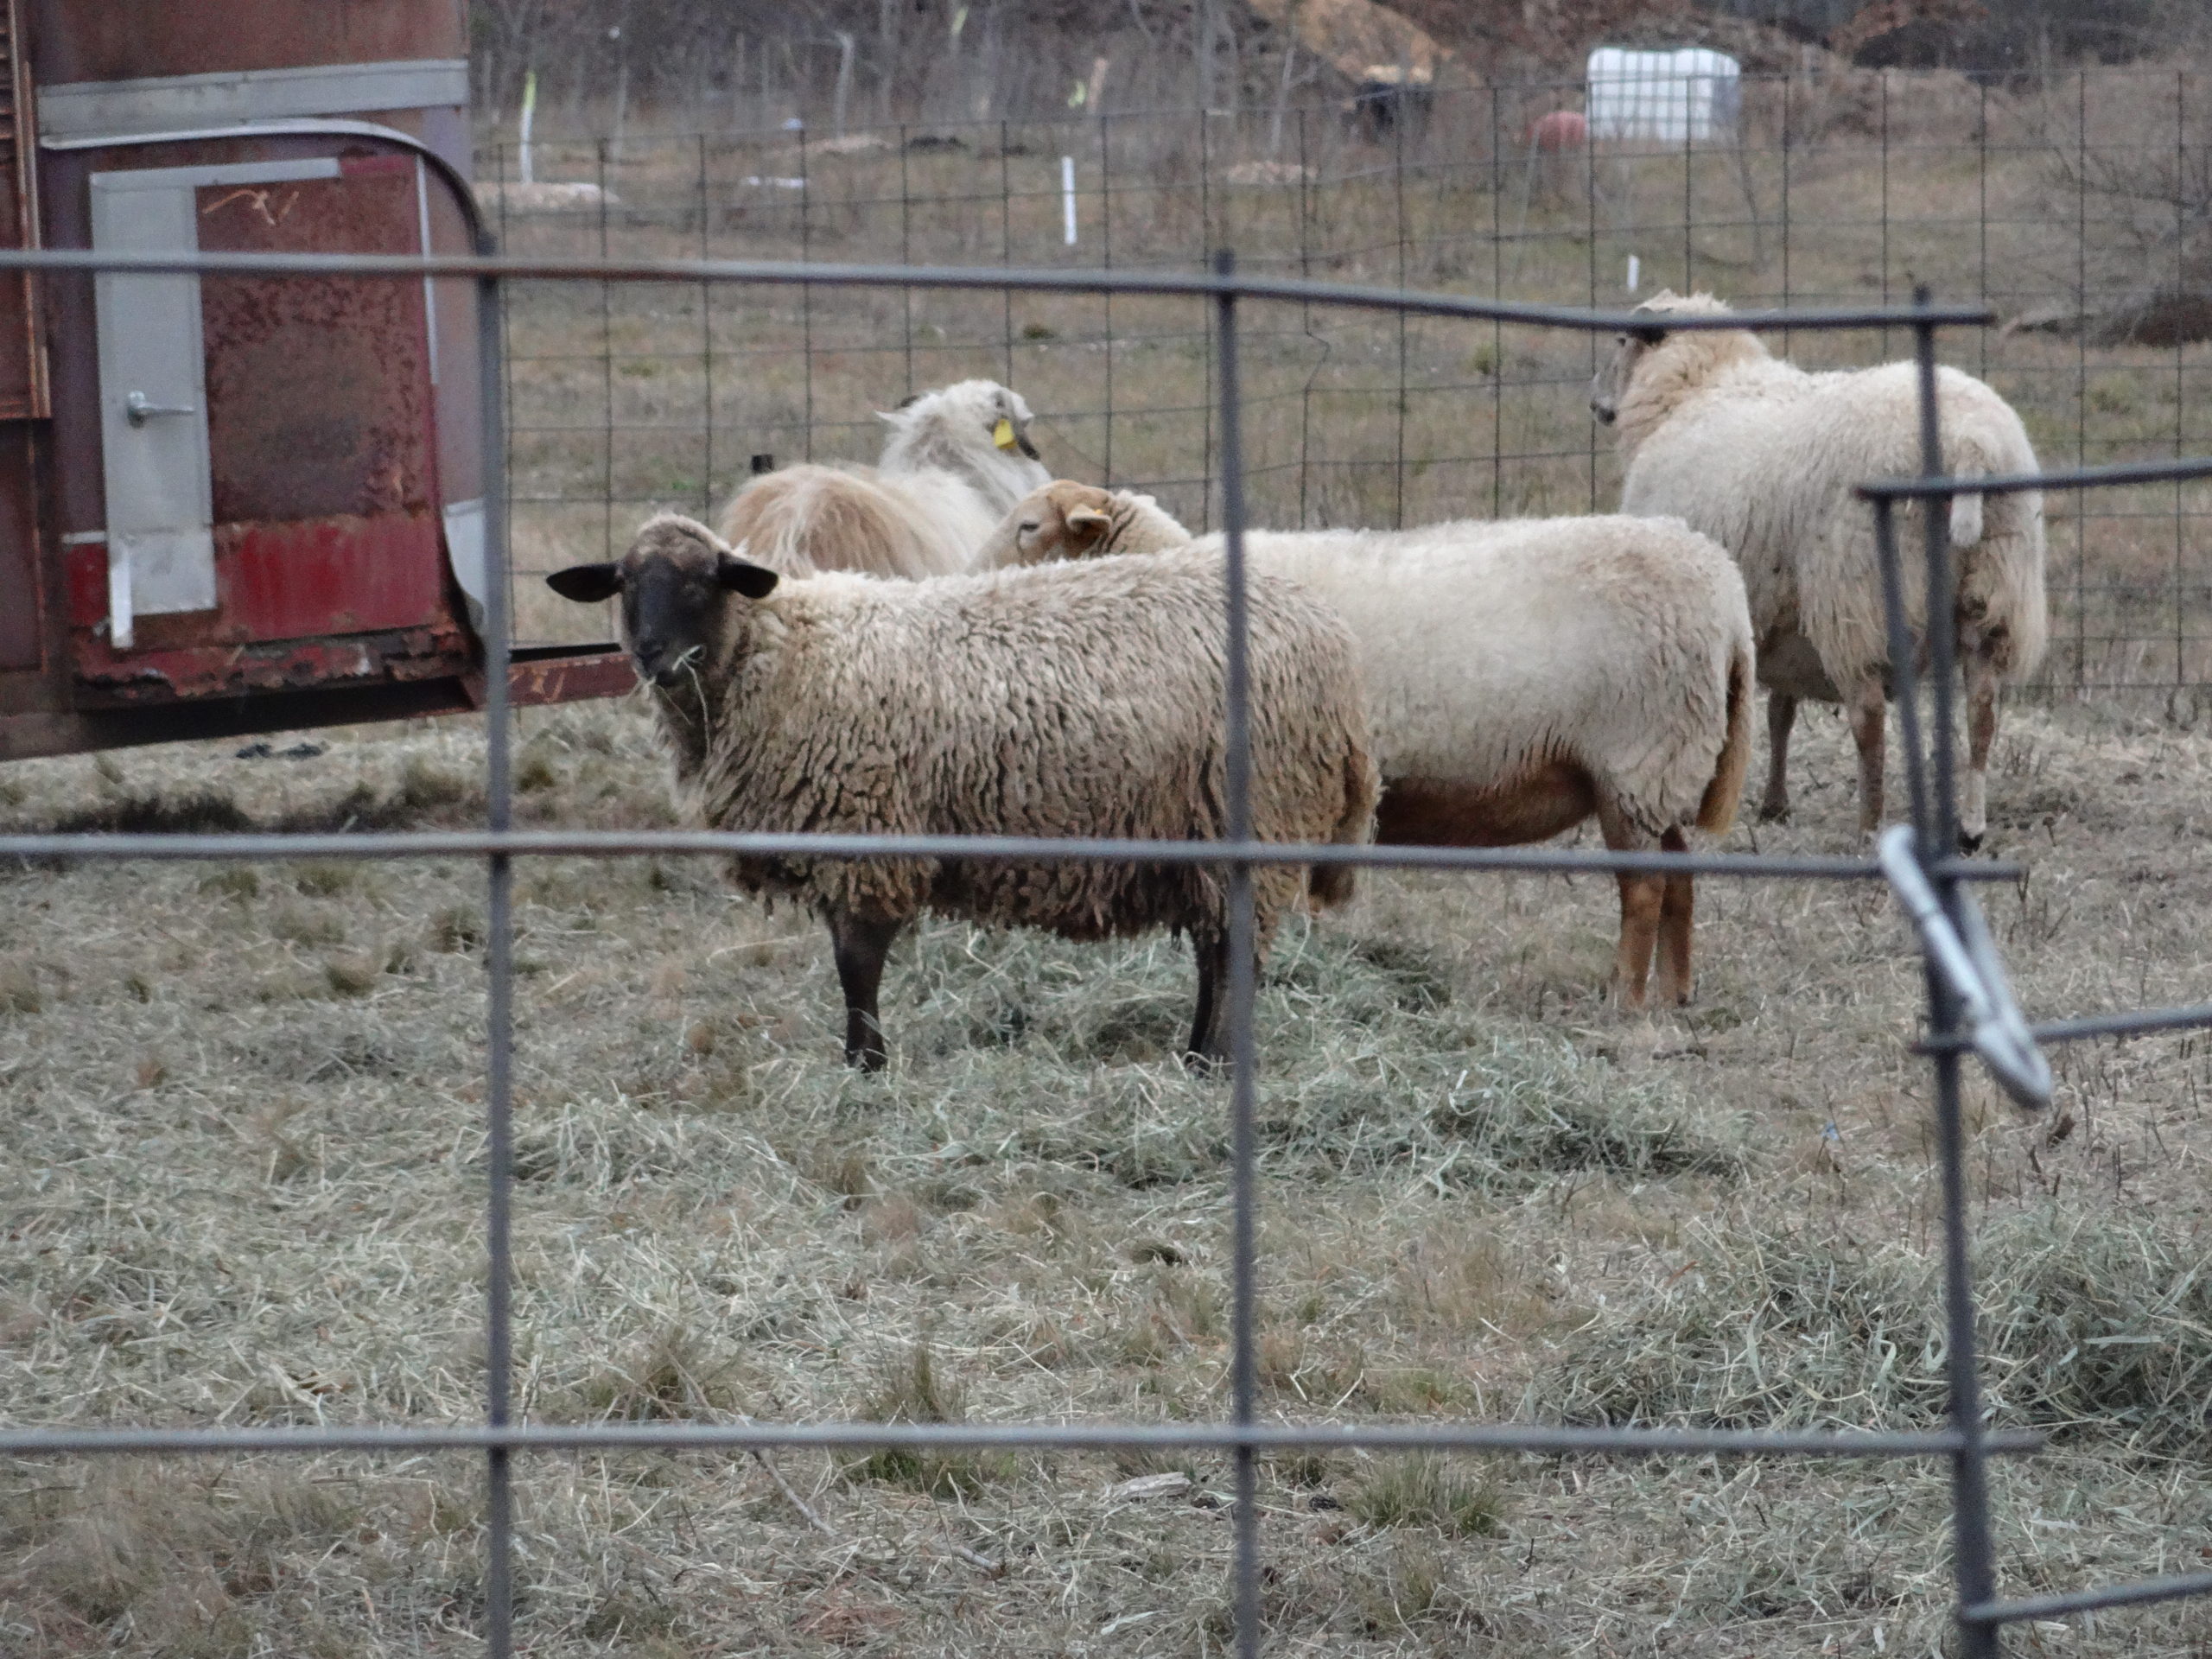 Sheep grazing at Thimble Farm